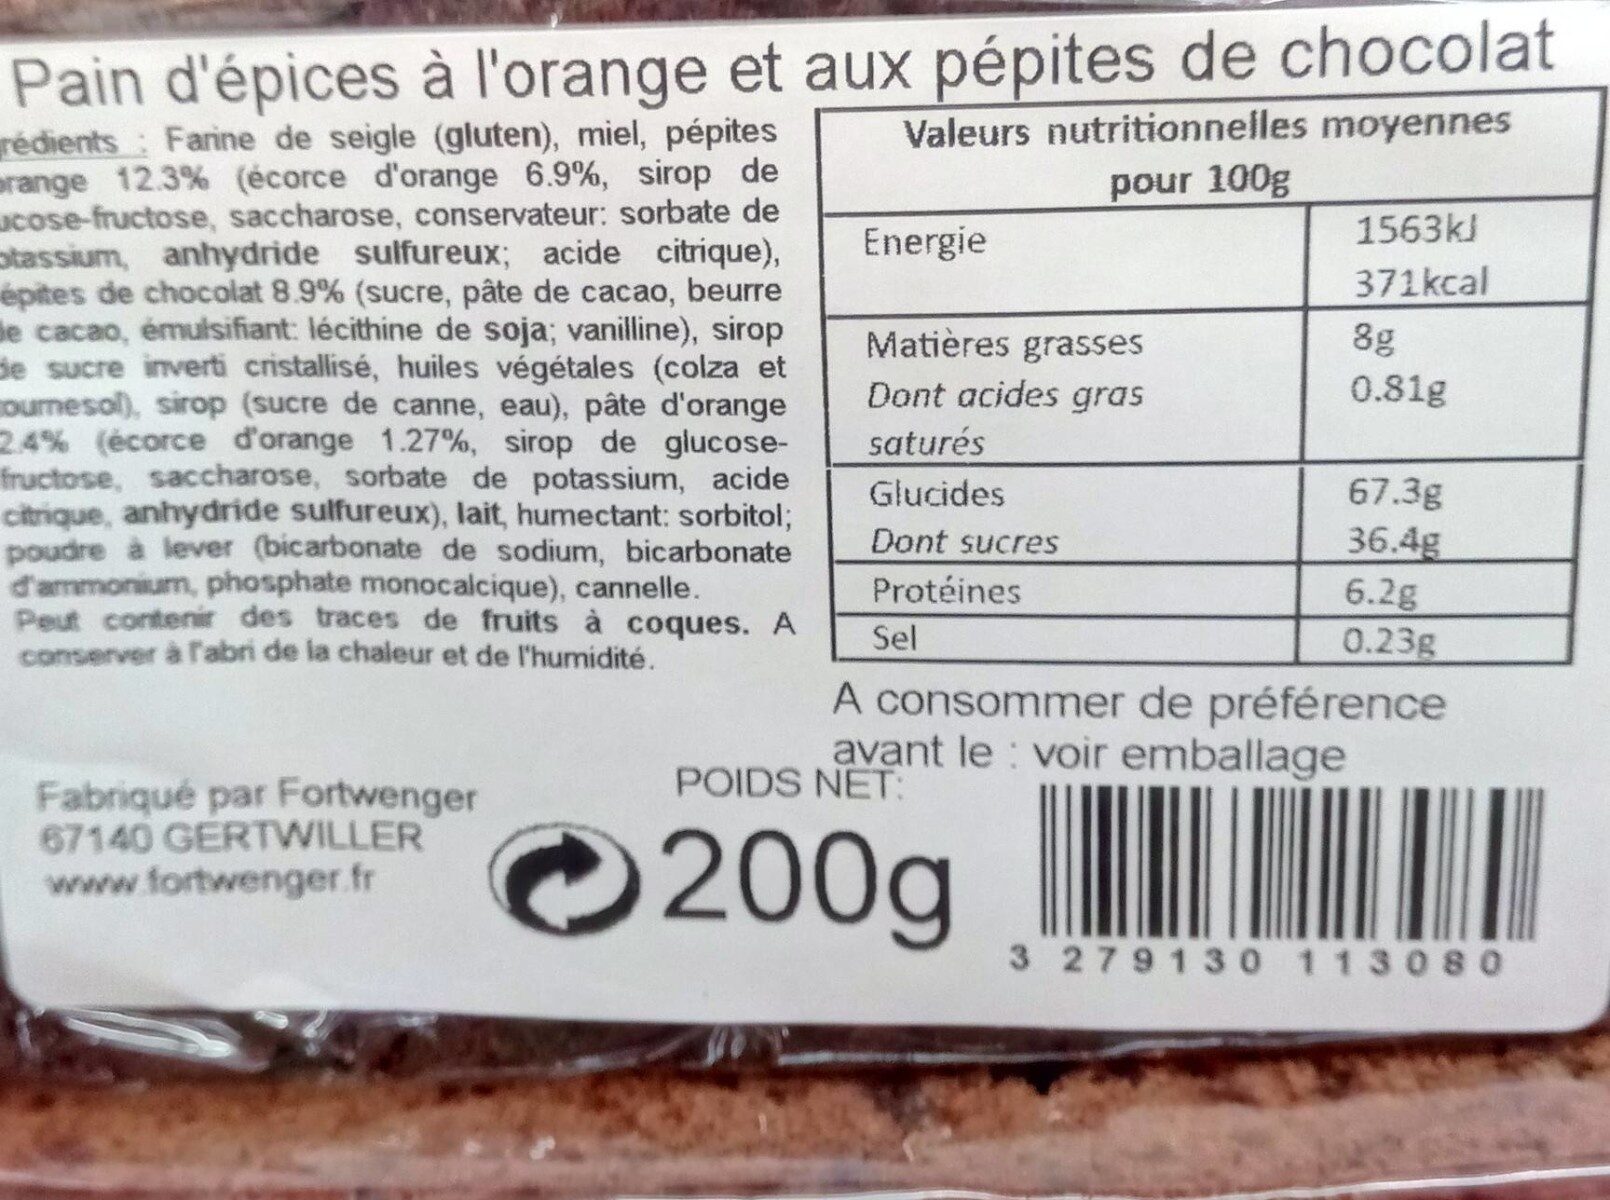 Pain d'épices à l'orange - Nutrition facts - fr